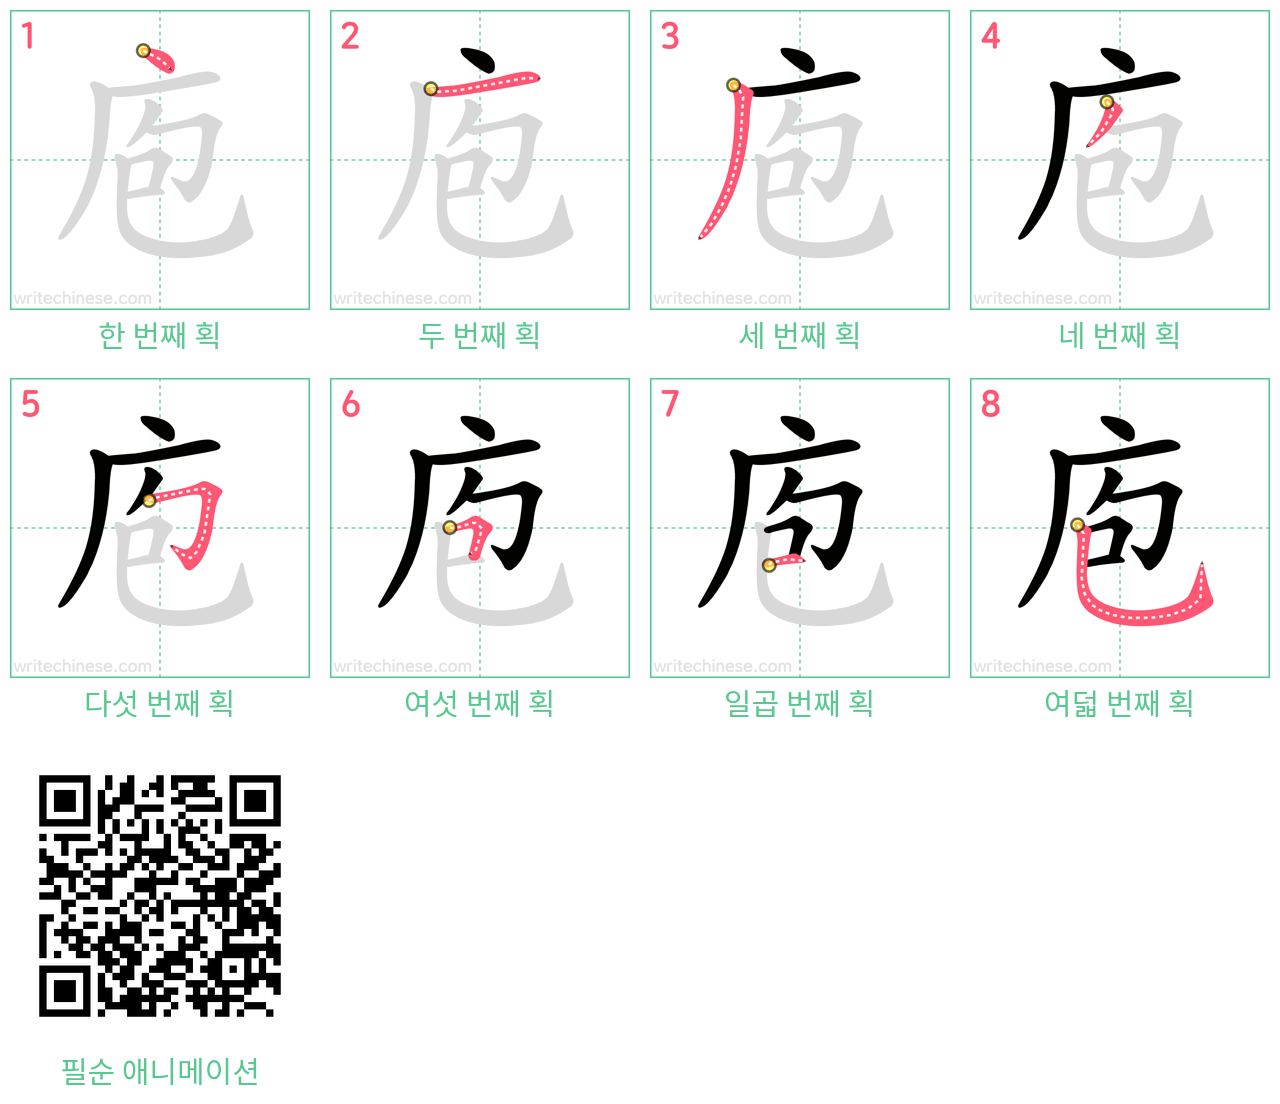 庖 step-by-step stroke order diagrams